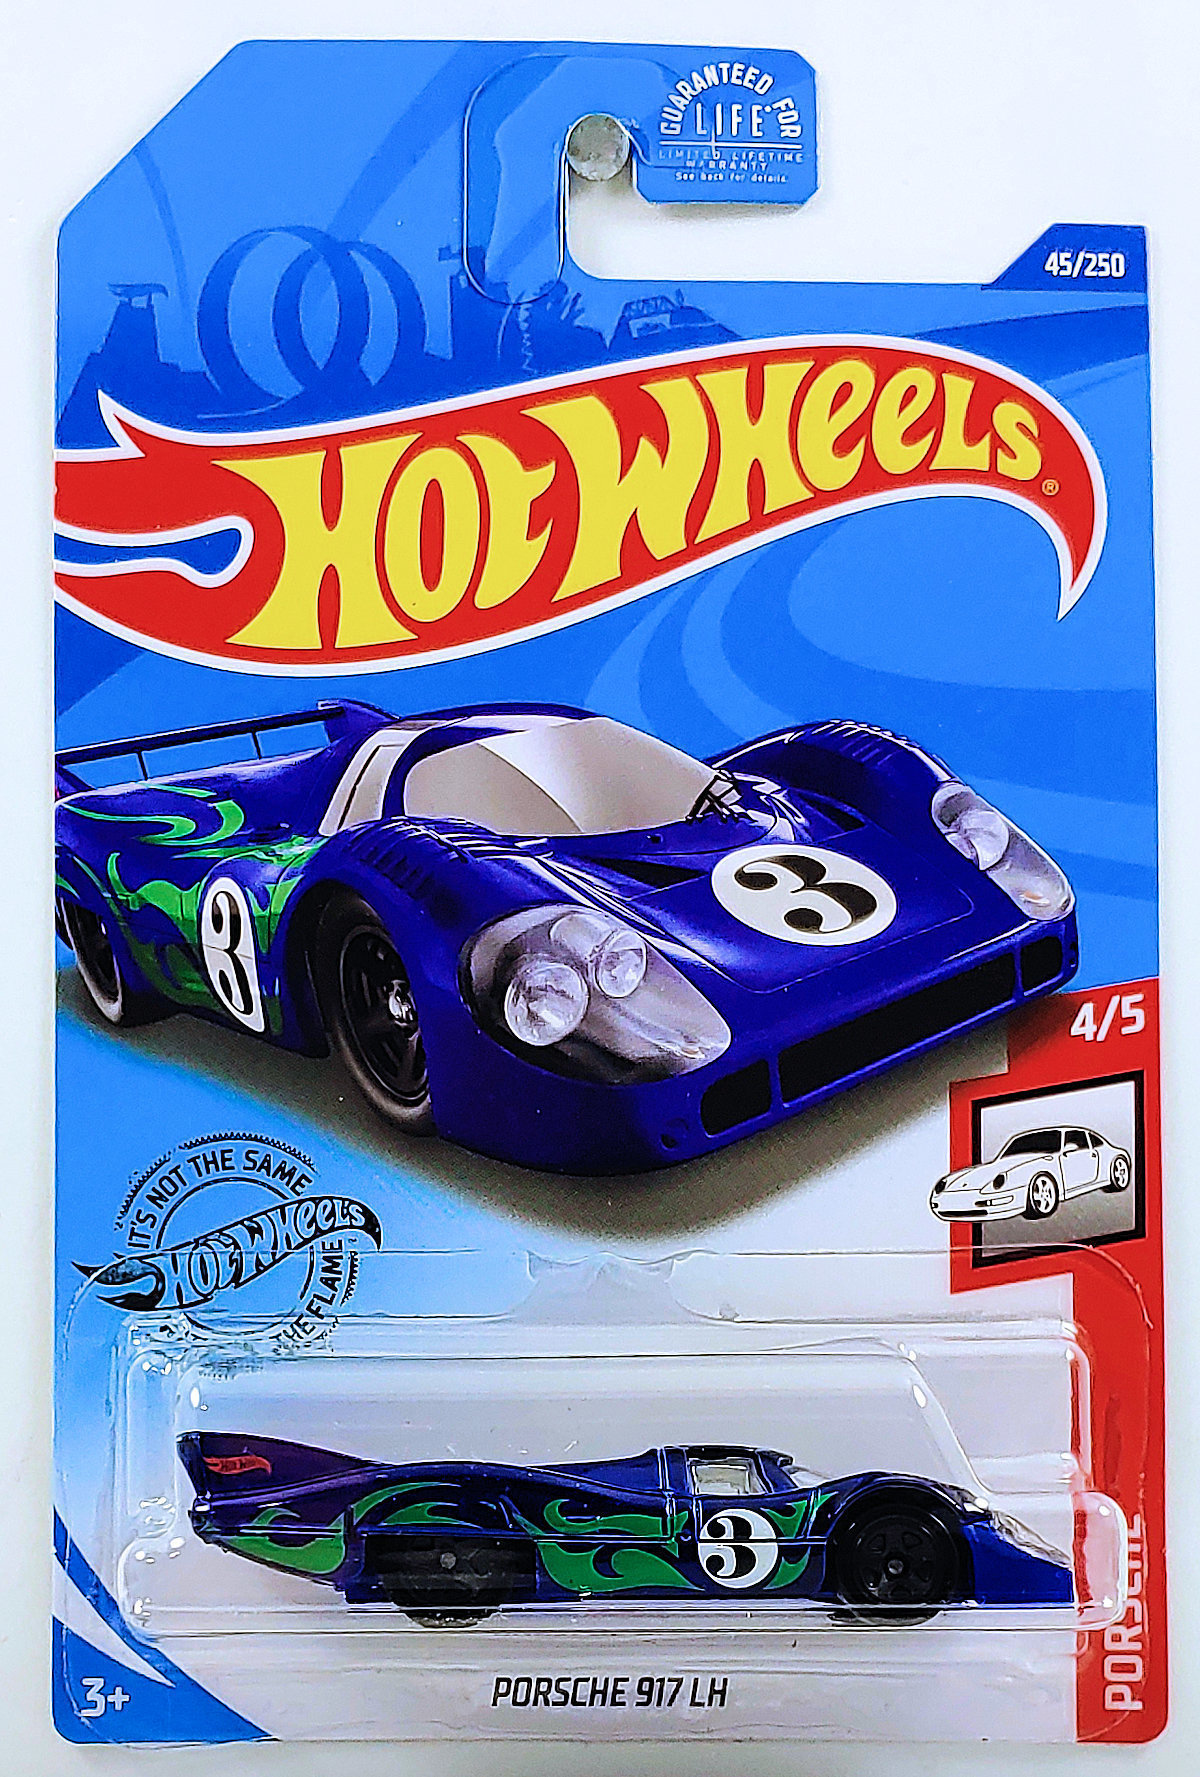 5-15%+3.35+Off S&H W/More 2020 Hot Wheels Porsche 917 LH HW Porsche 4/5 Purple 